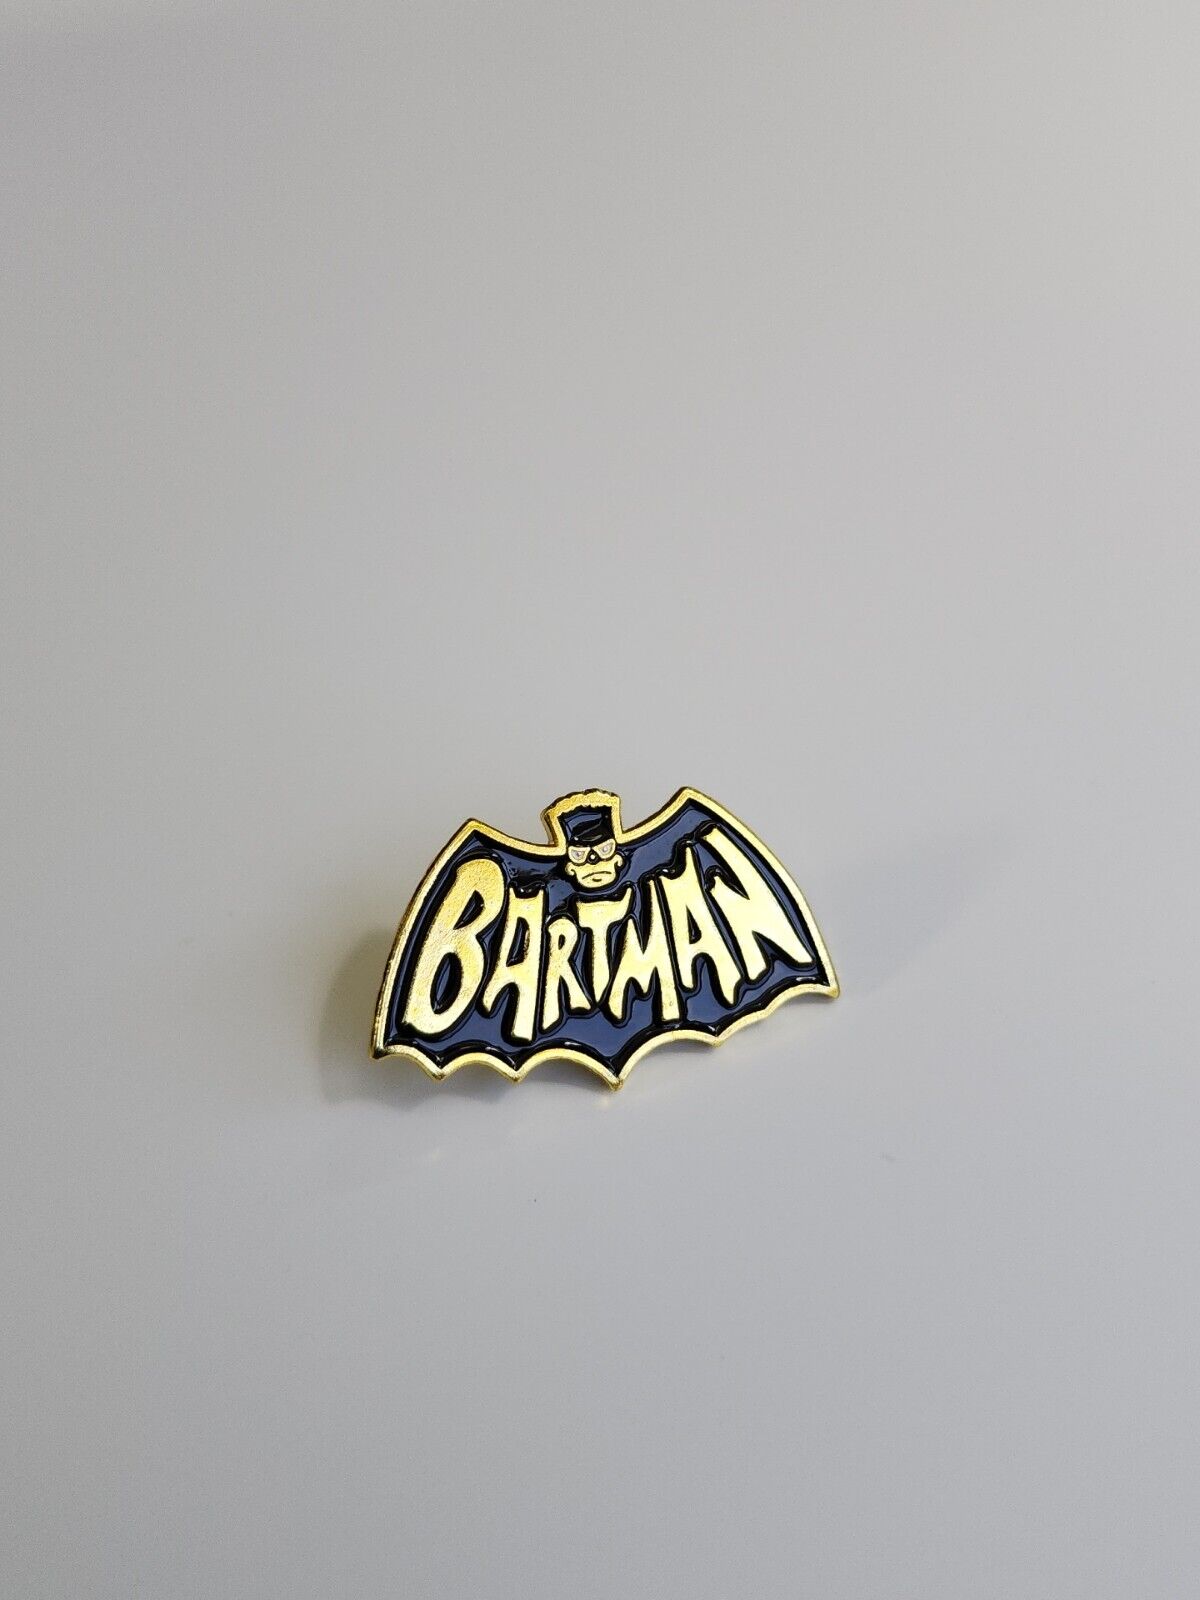 Batman Lapel Pin Bart Simpson Cartoon Character 